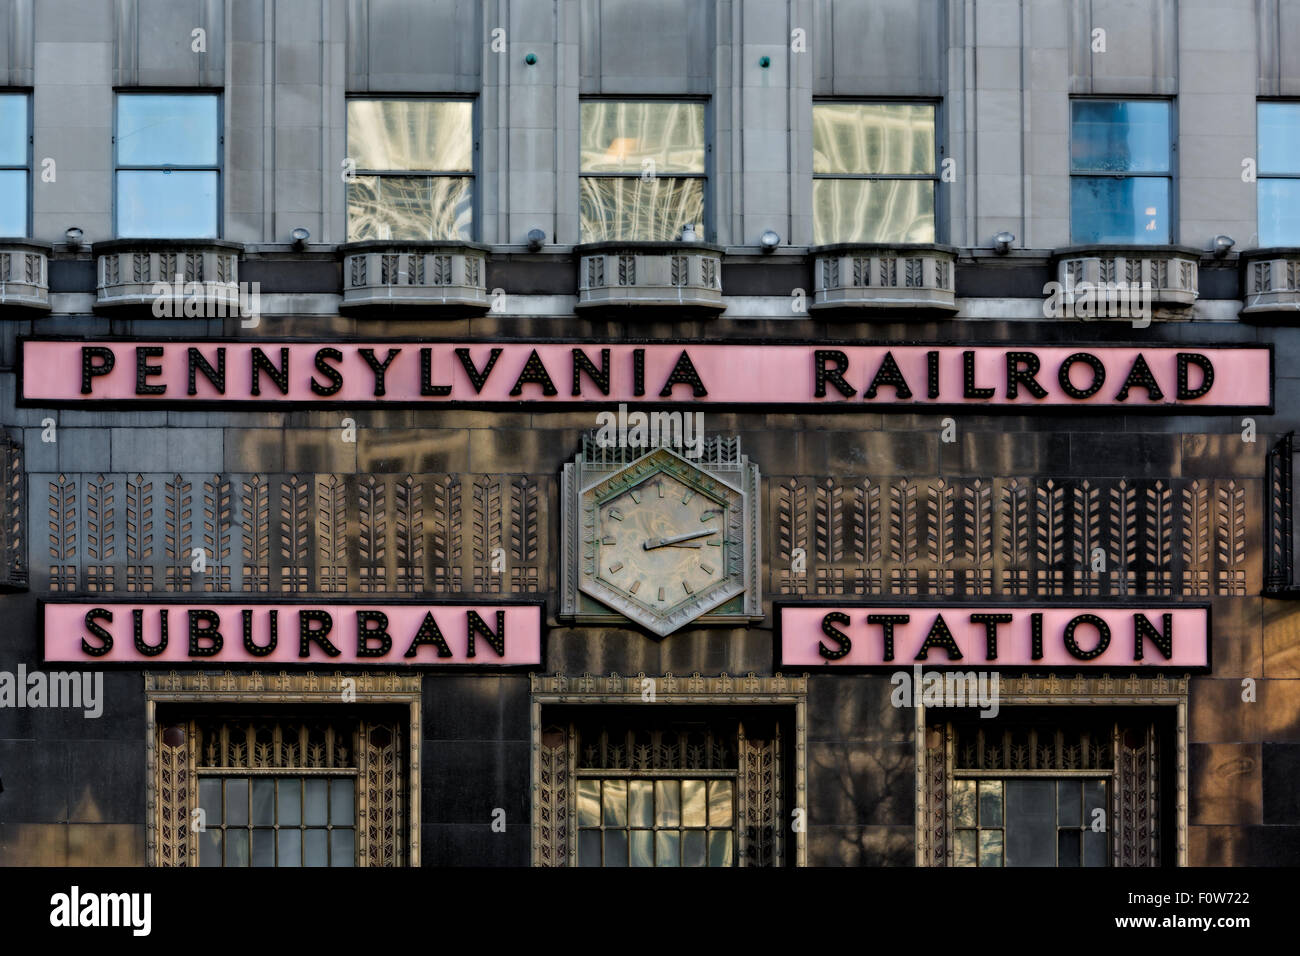 Washington Suburban Station - Fermer la vue à l'architecture de style art déco de la Pennsylvania Railroad Station de banlieue de Philadelphie, Pennsylvanie. Banque D'Images